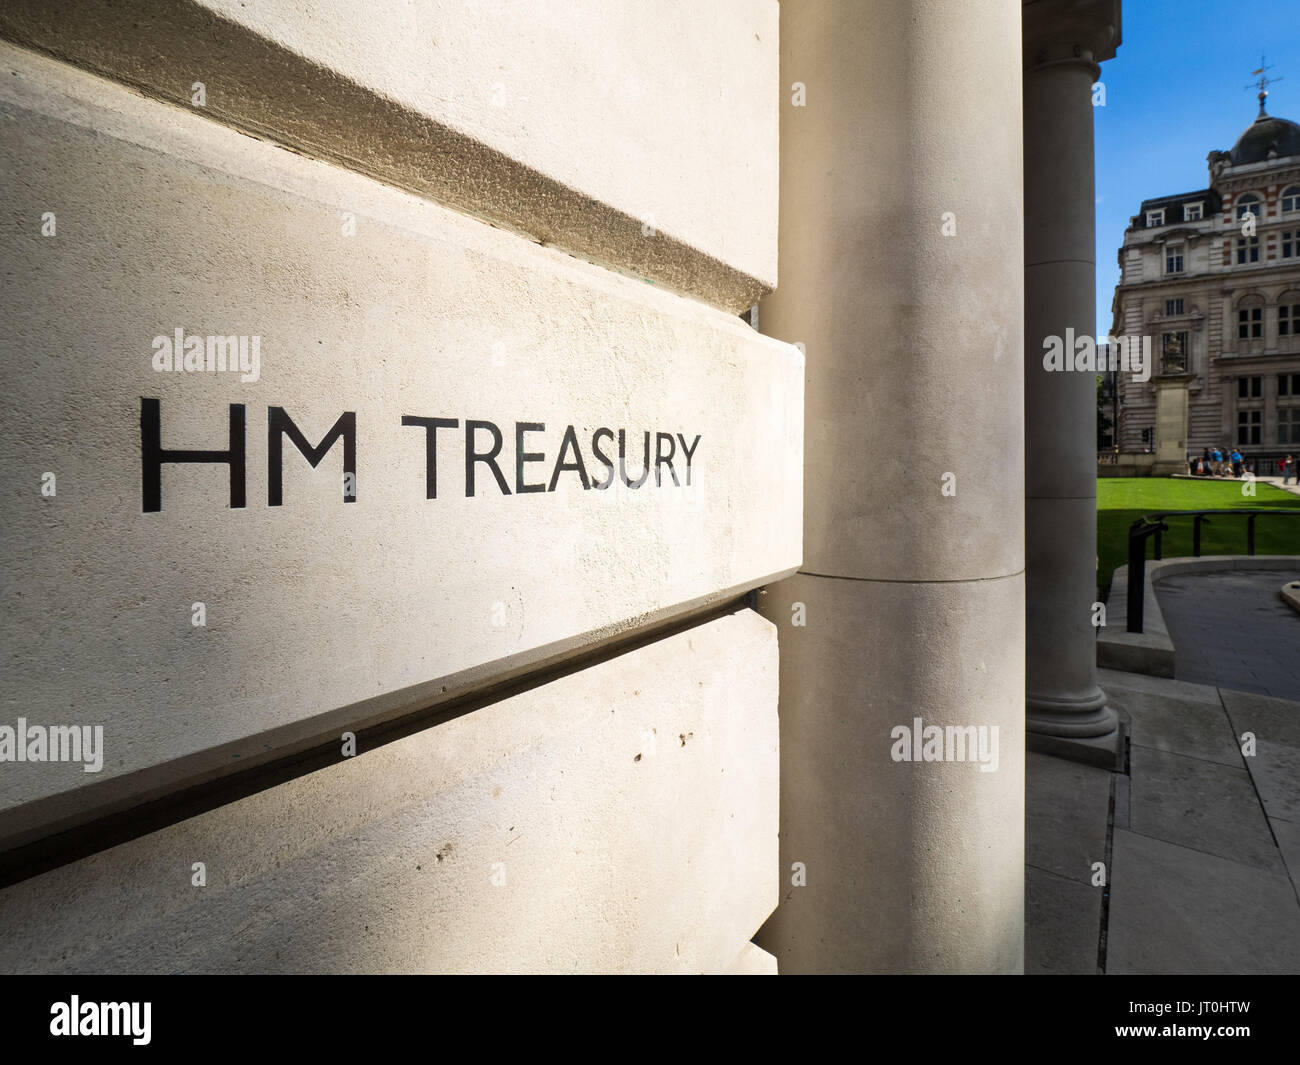 HM Treasury office en guardias de Caballos Rd, Westminster, Londres, Reino Unido. La Tesorería controla y coordina el gasto gubernamental del Reino Unido Foto de stock